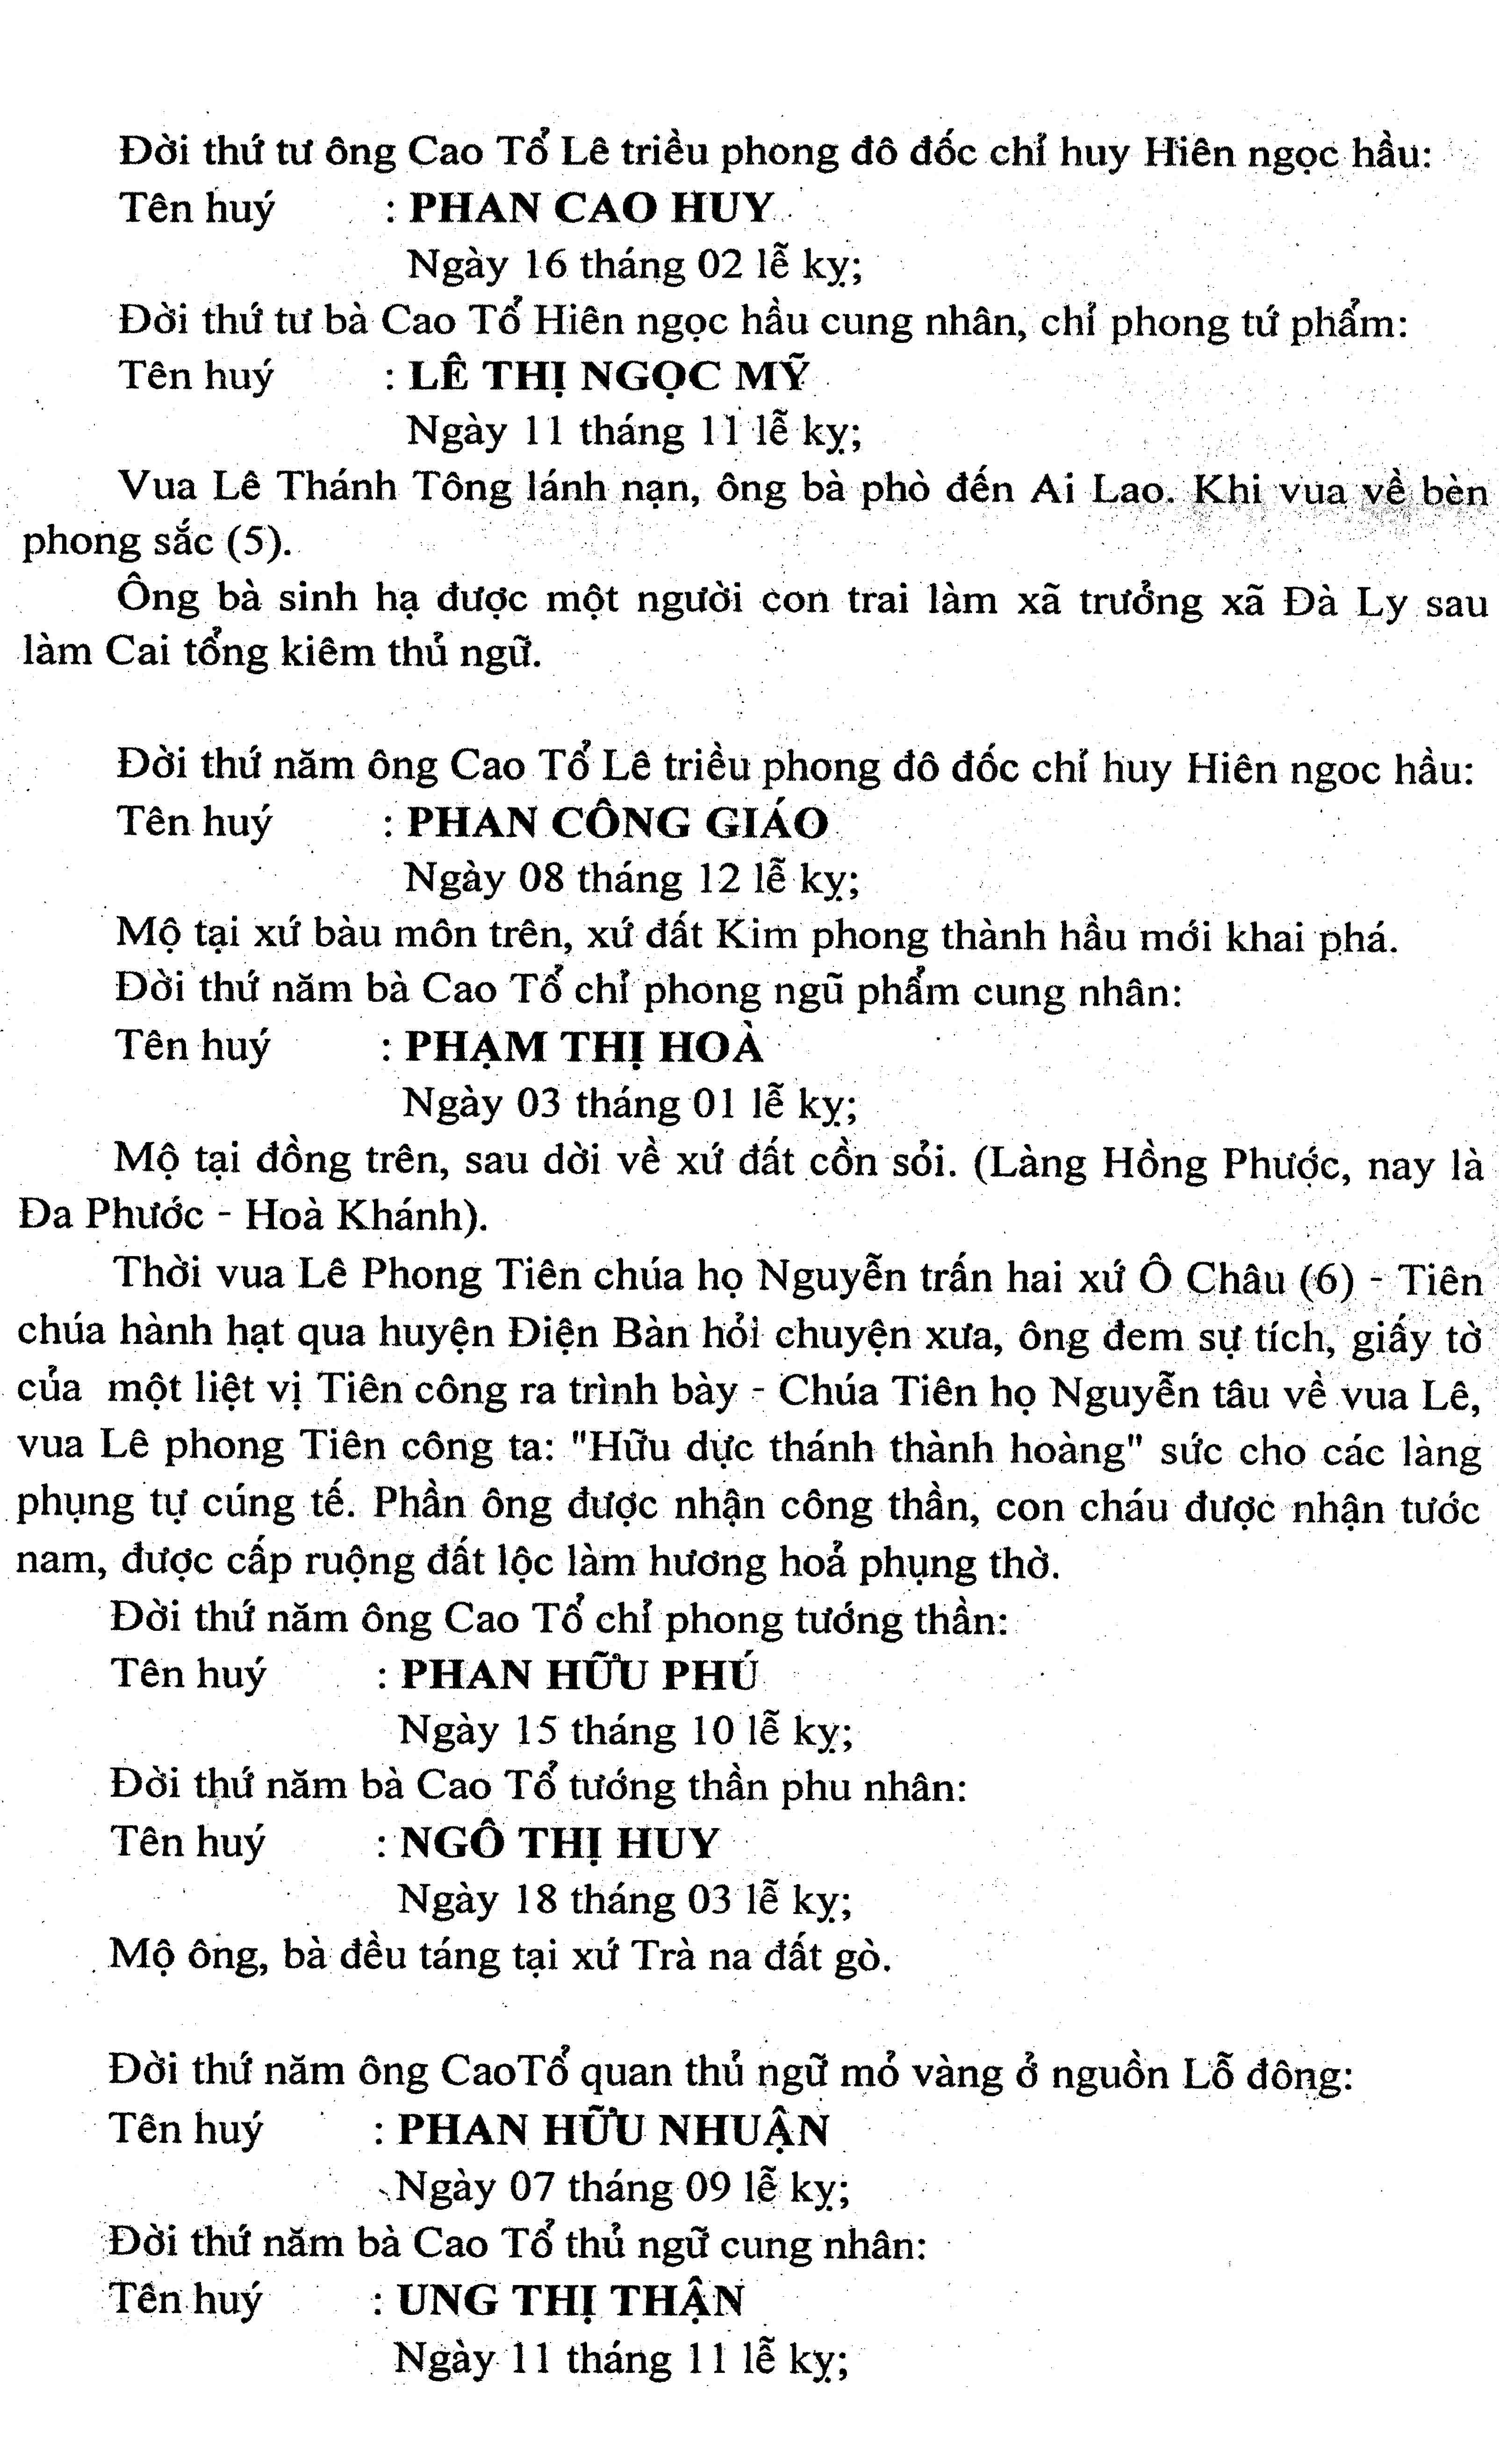 14 - Miền tháp cổ - Tác giả Vũ Hùng - Kỳ 10 - Phan tộc phổ chí Đà Sơn - Đà Ly nhị xã